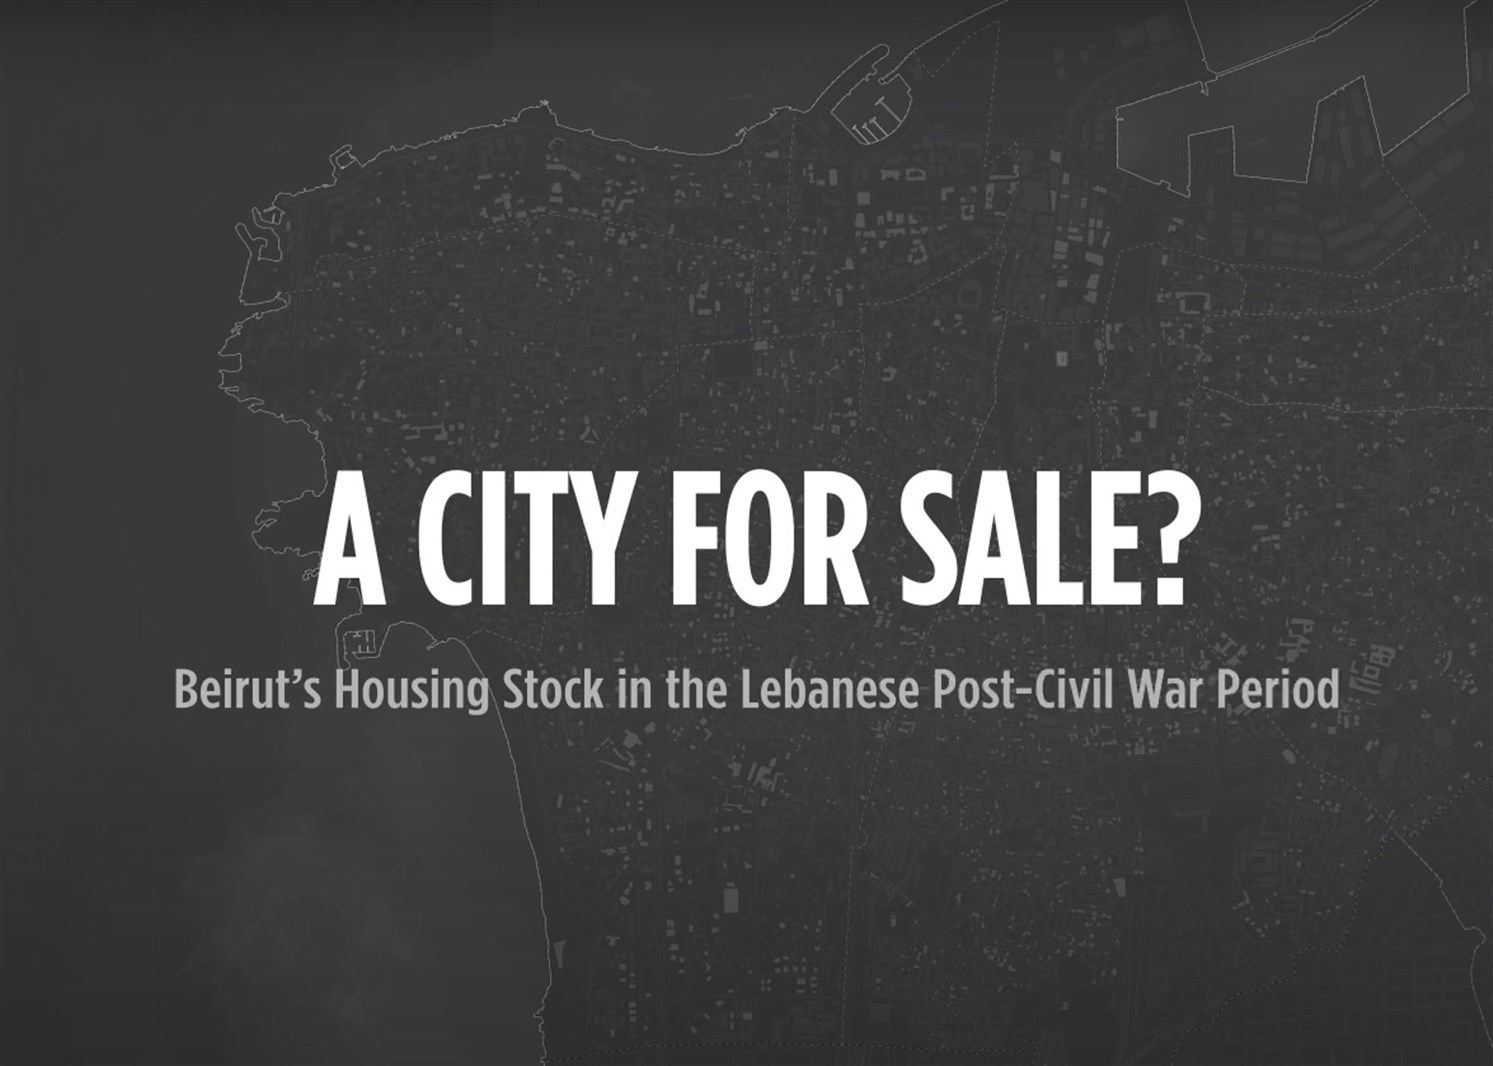 بيروت: مدينة للبيع؟" الفيديو التوضيحي"